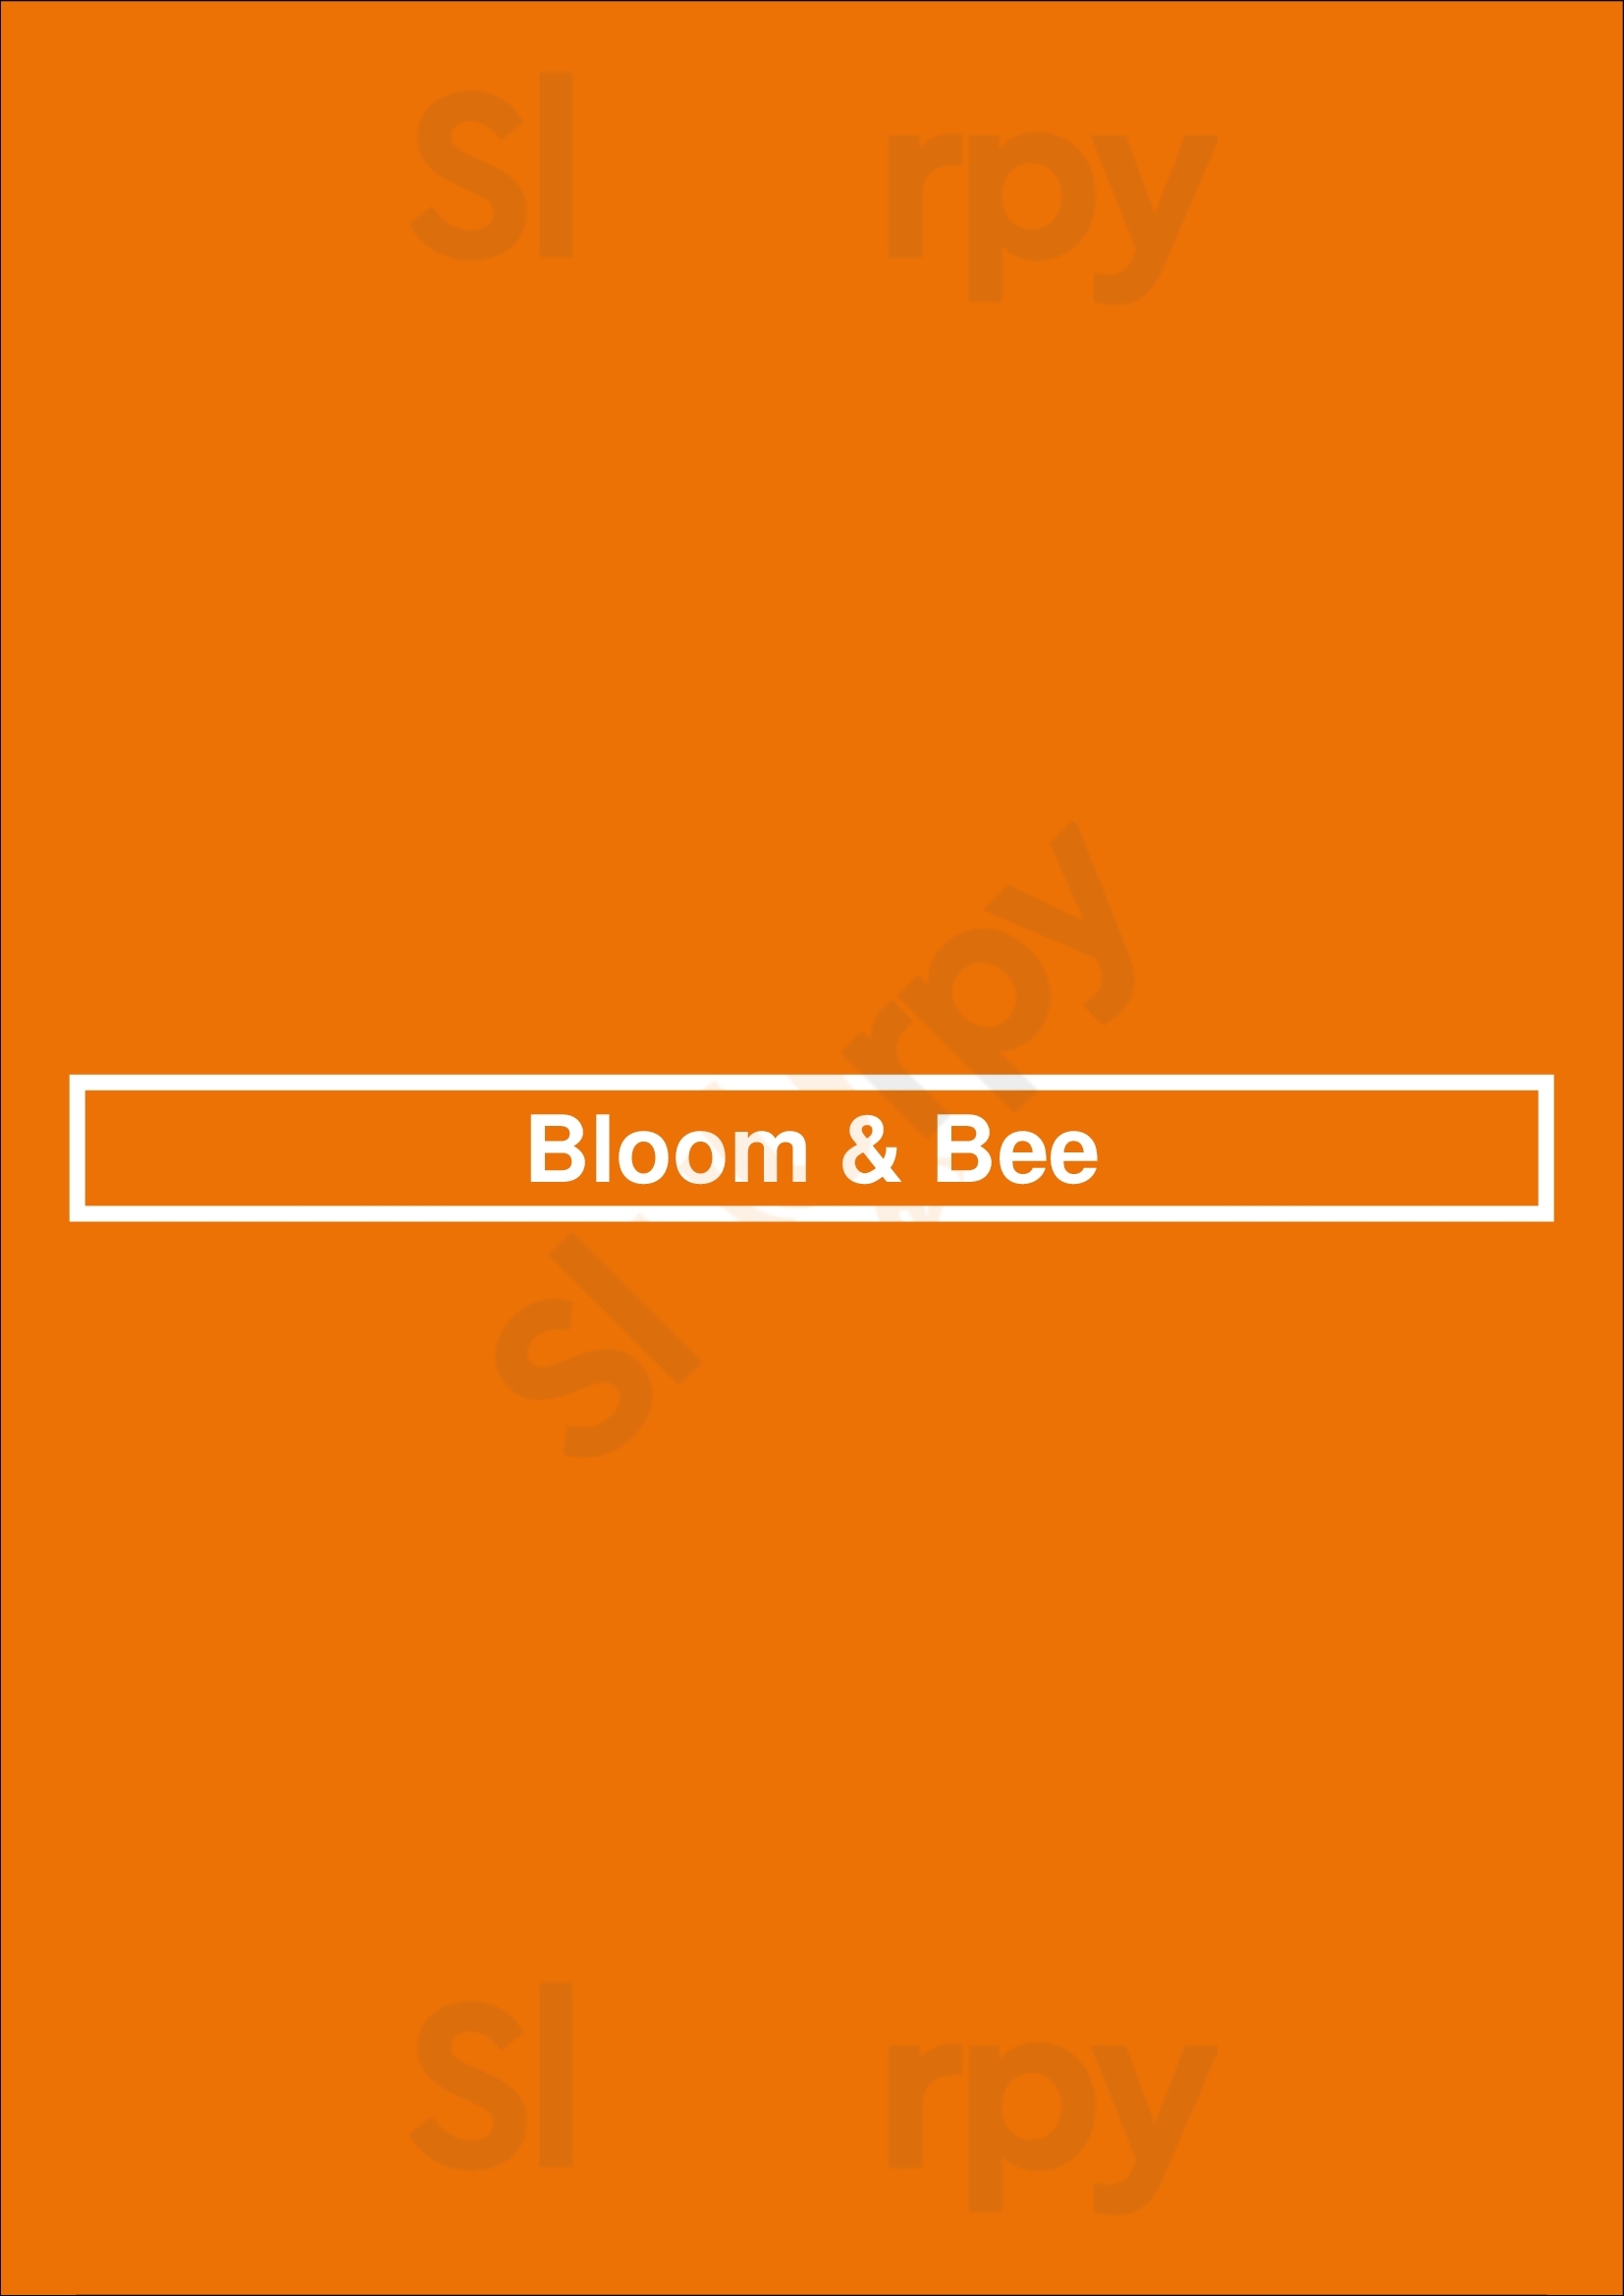 Bloom & Bee Houston Menu - 1